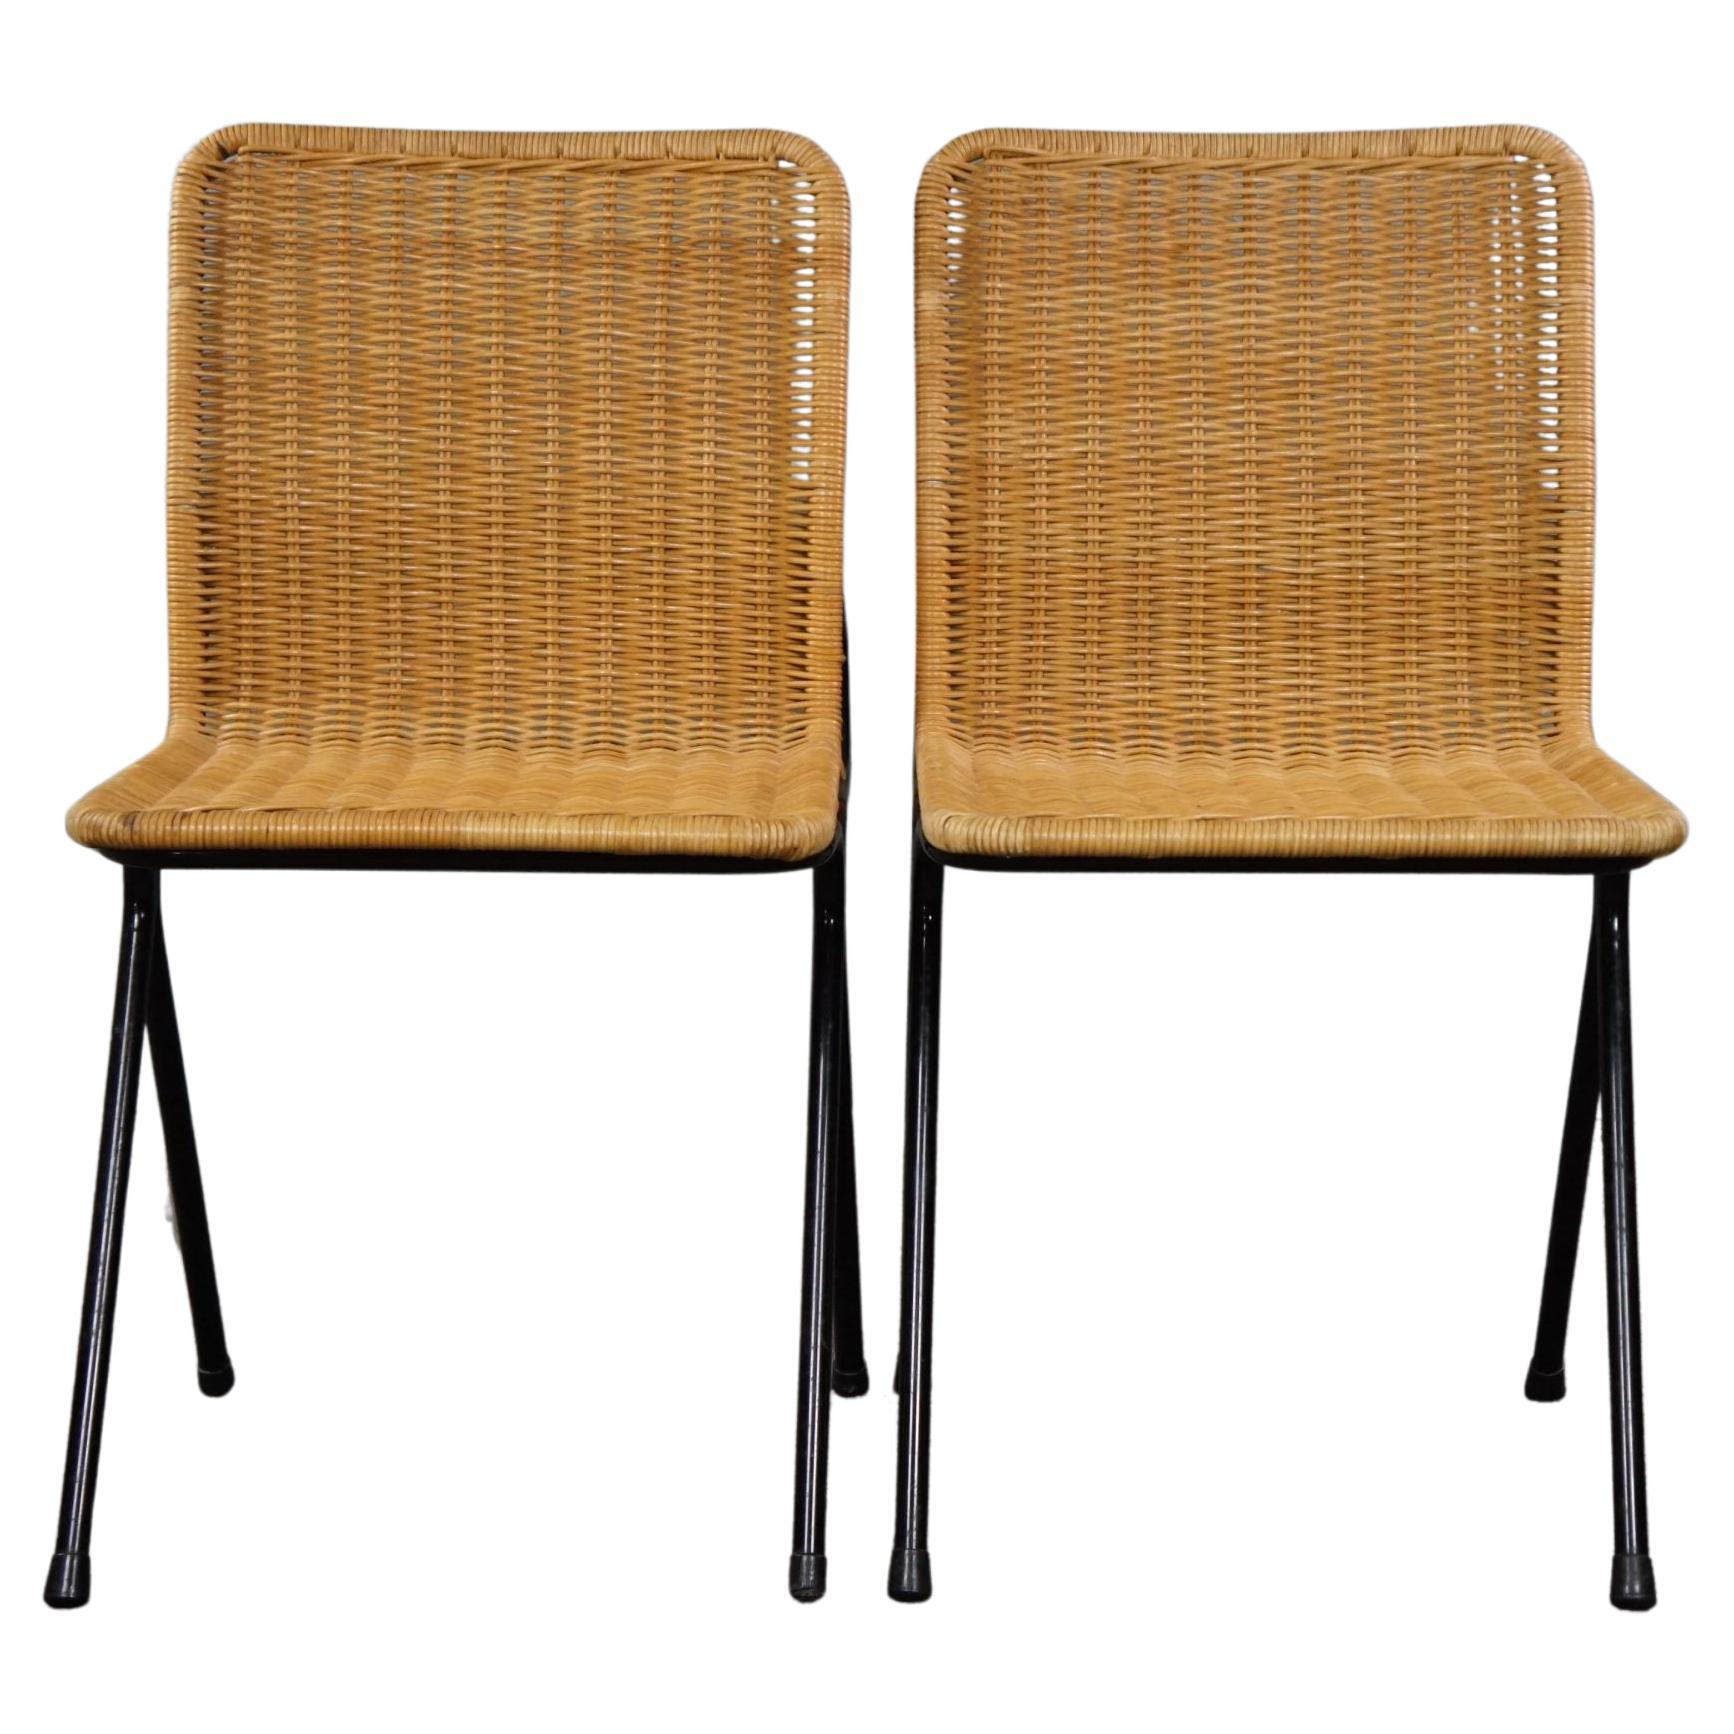 Set of two vintage rattan design chairs, Dirk van Sliedrecht, 1960s